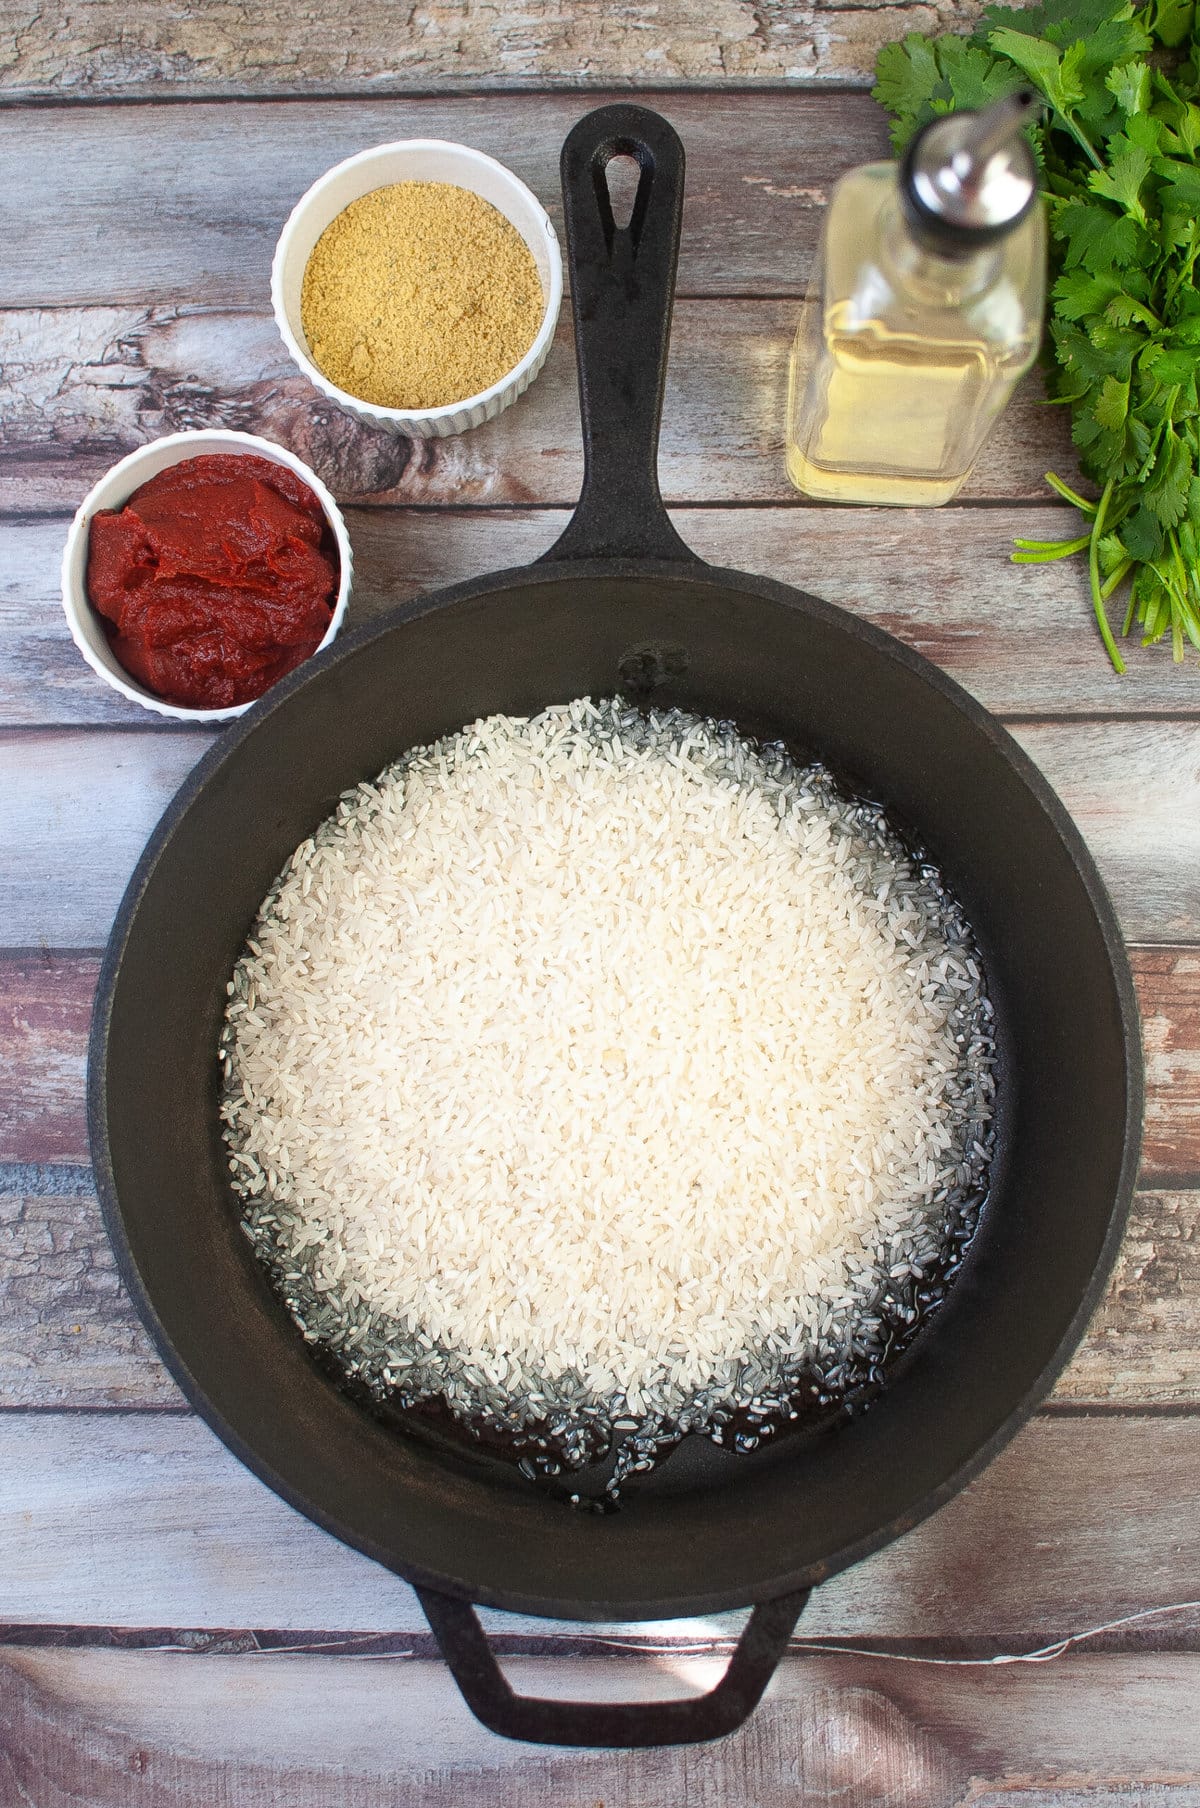 将米饭加入煎锅中。